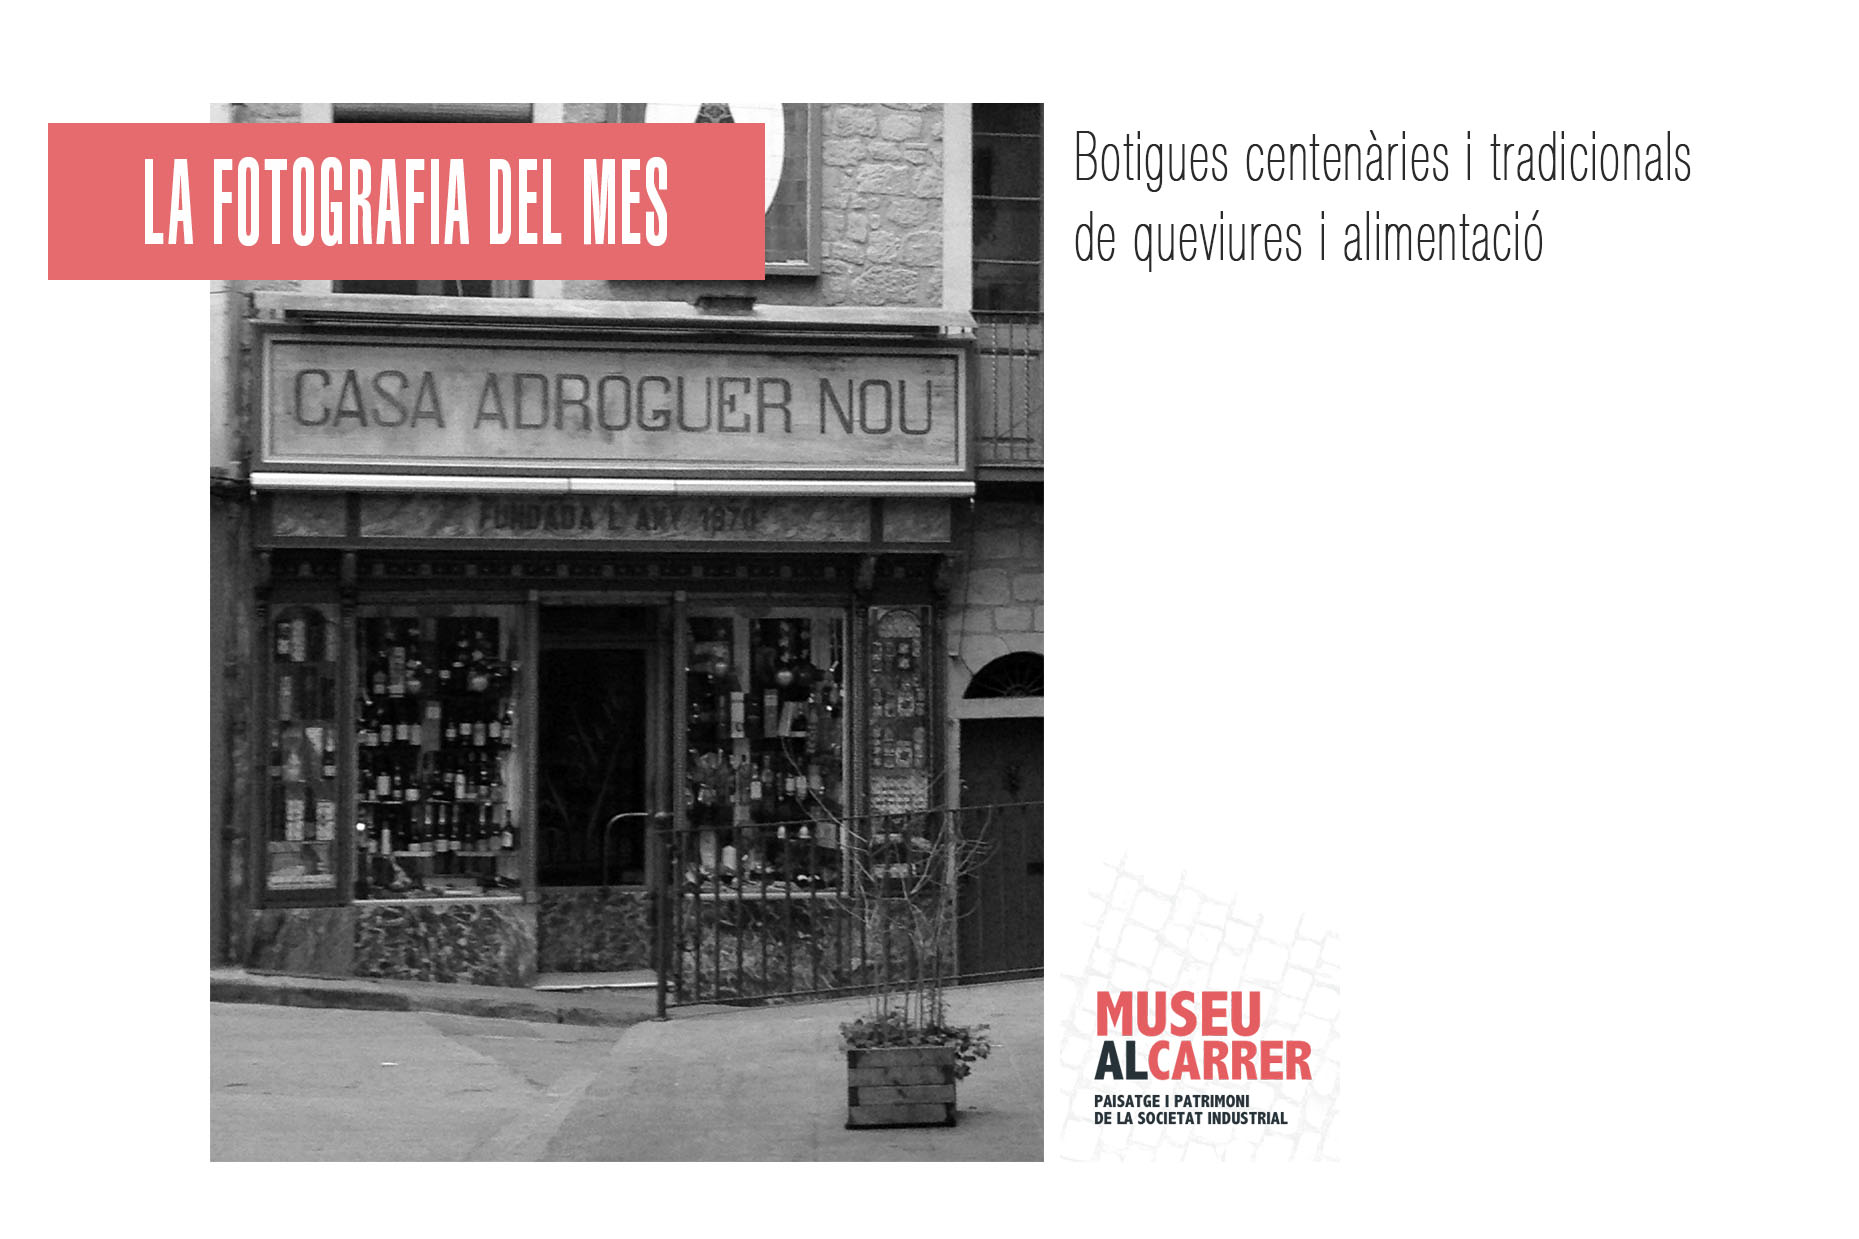 Tercera edició “La fotografia del mes de Museu al carrer”